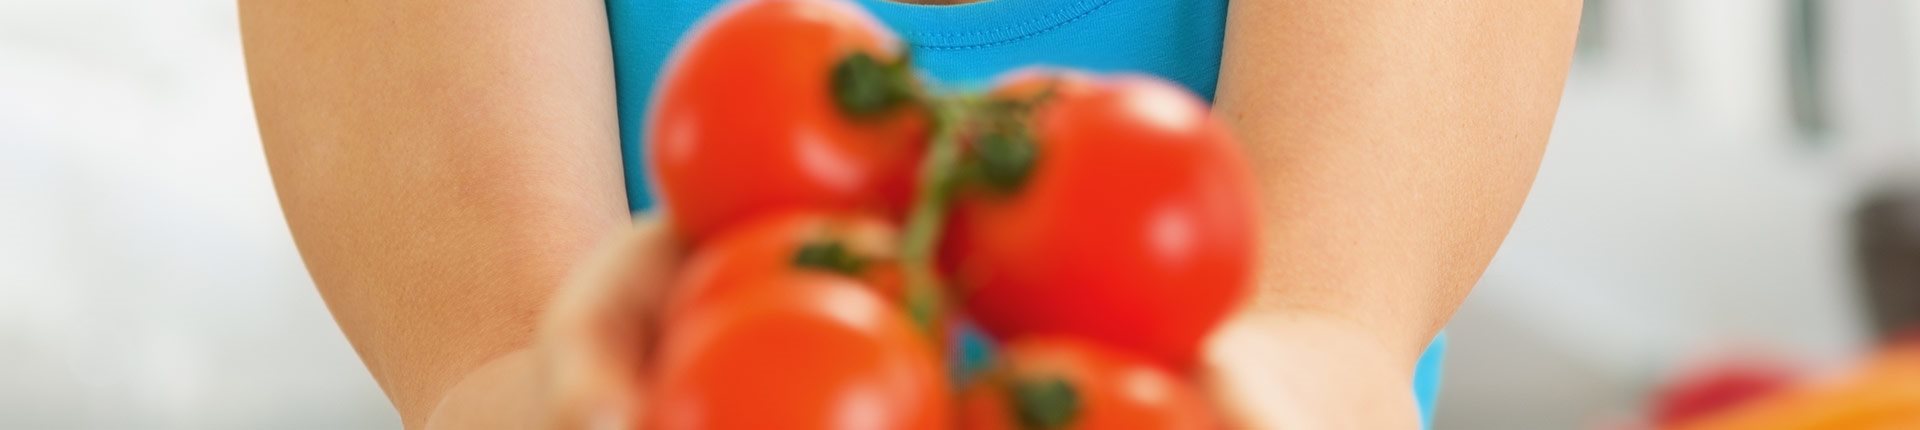 Ile kalorii ma pomidor? Wartość odżywcza pomidora